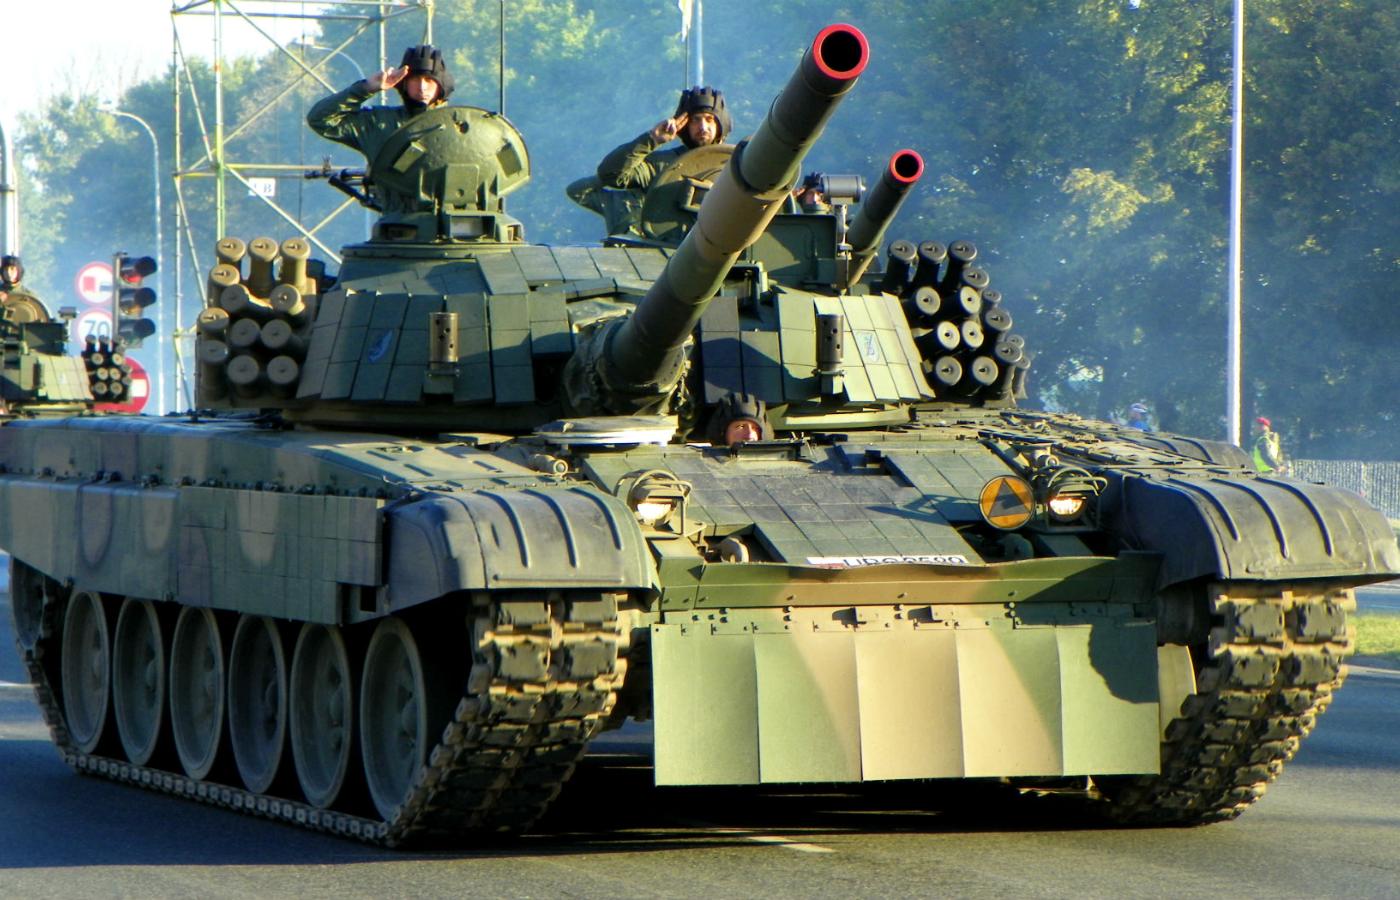 Czołg PT-91 Twardy – polska modernizacja T-72 z lat 90., jeden z czterech typów czołgów używanych w Wojsku Polskim. Charakterystyczny „siwy dym” wydechu świadczy o prawidłowej pracy silnika.